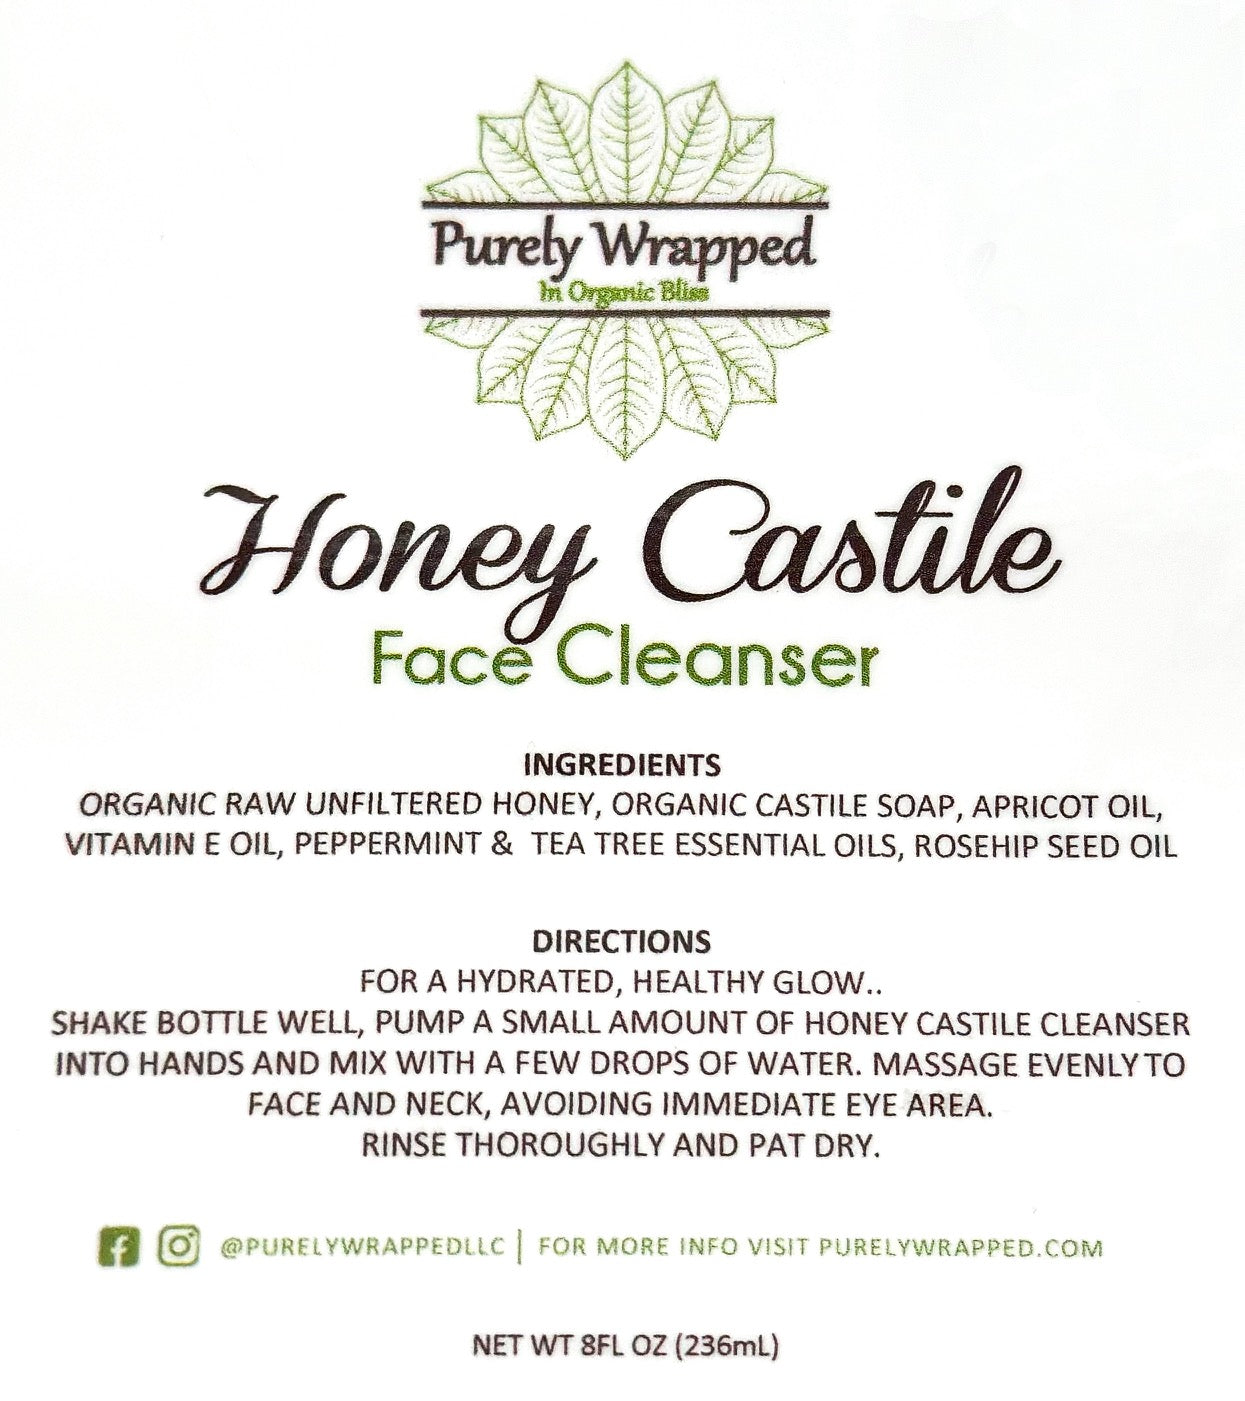 Honey Castile Face Cleanser